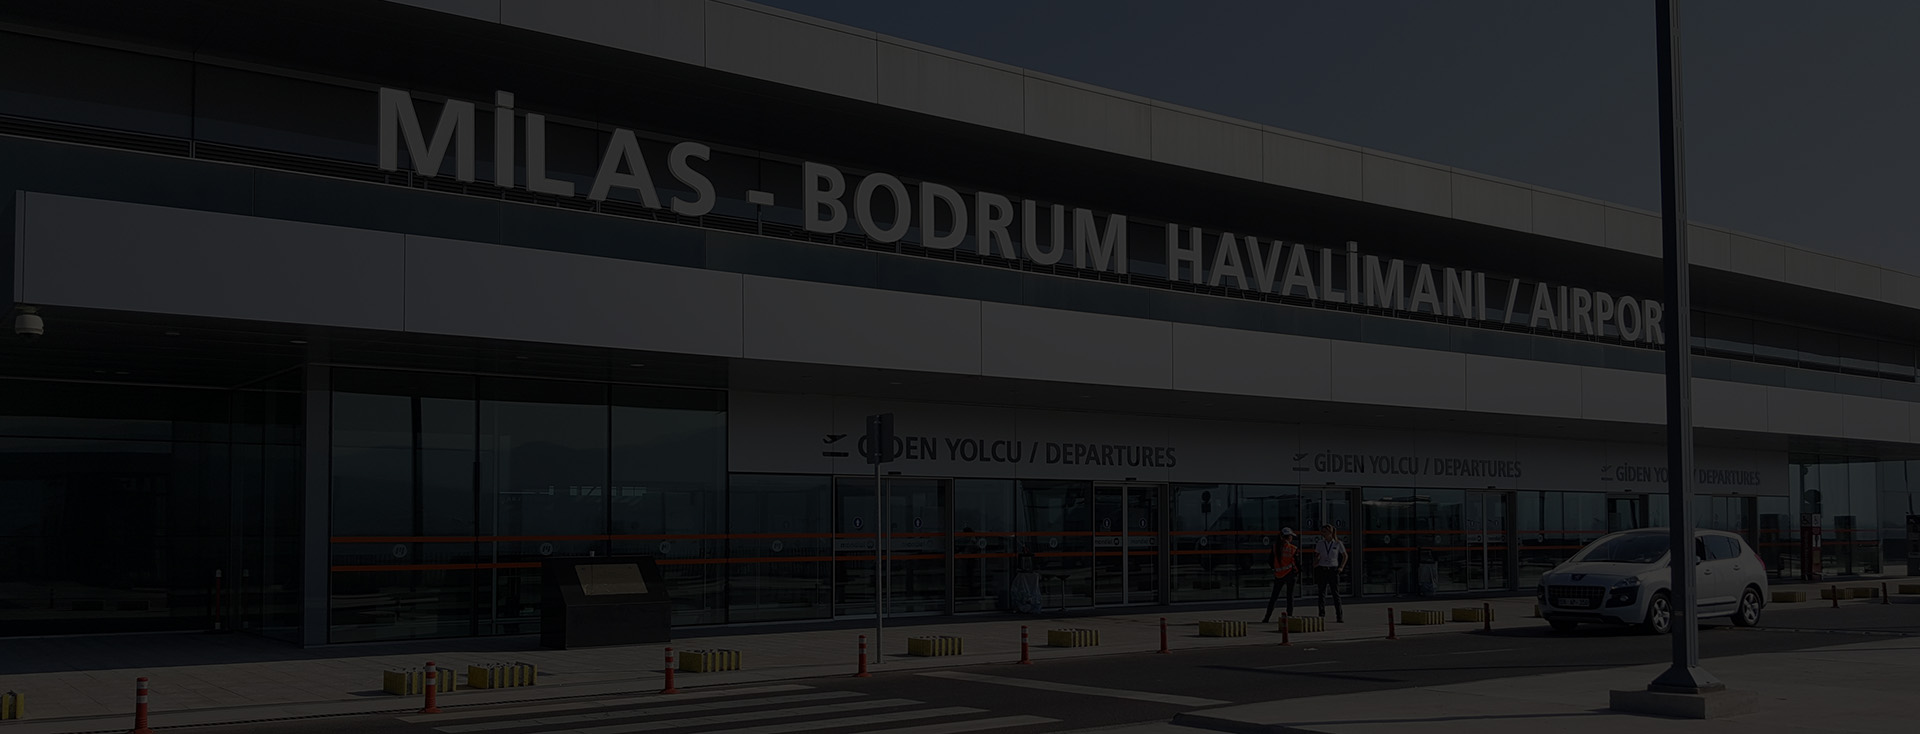 Bodrum Airport